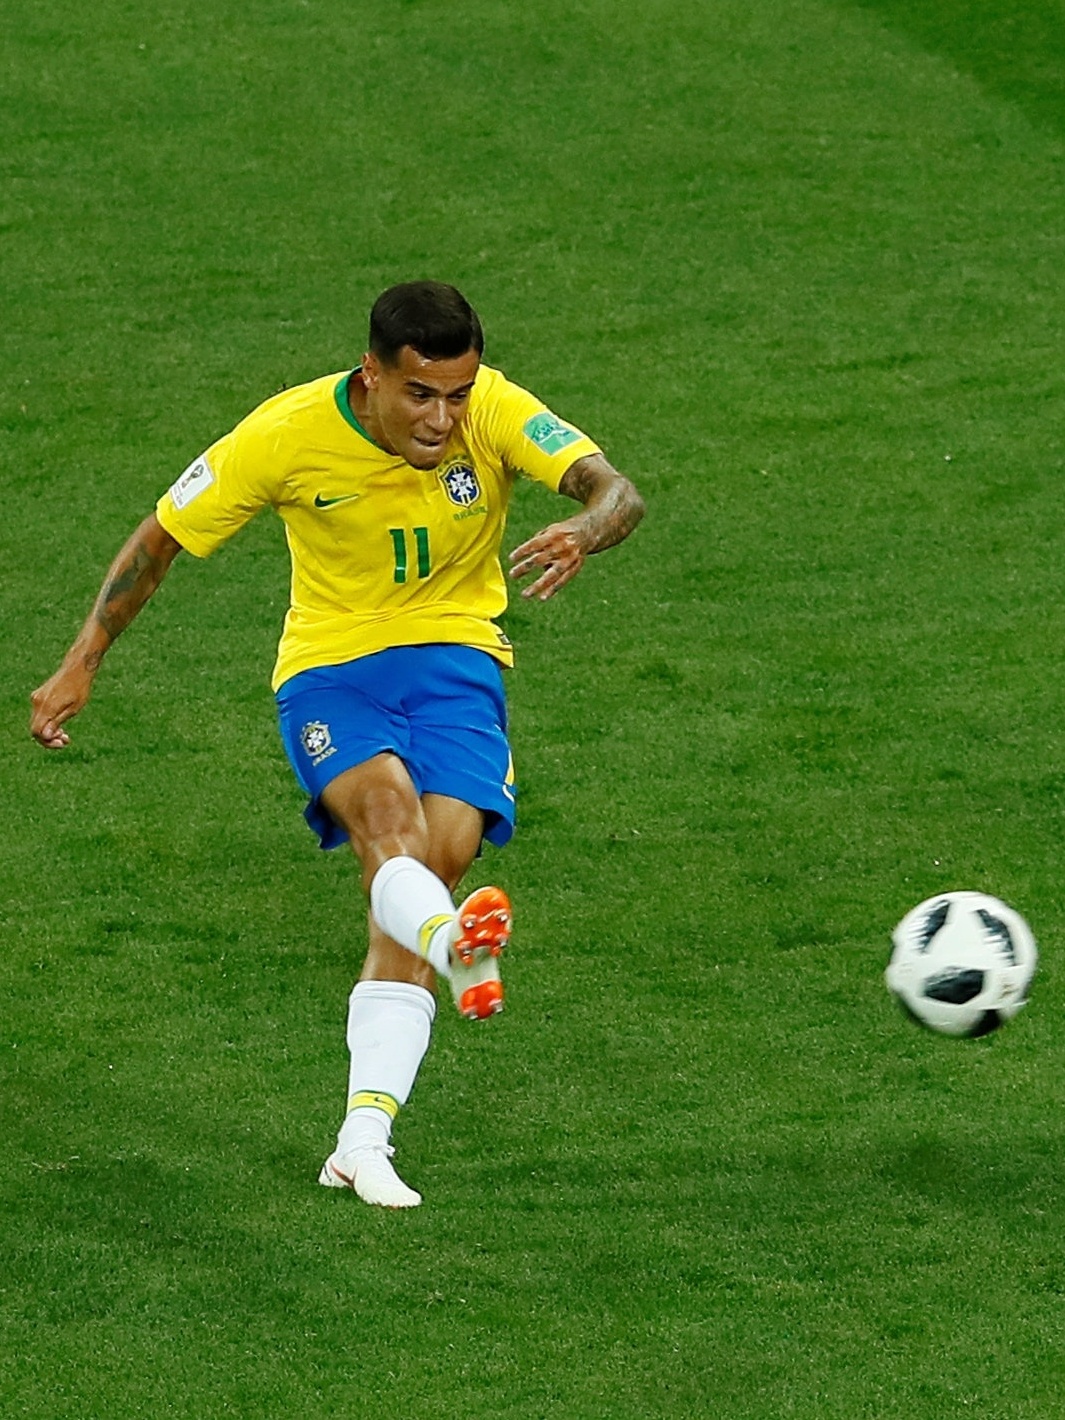 Estreia do Brasileirão e acesso da Portuguesa: o resumo do final de semana  - Placar - O futebol sem barreiras para você